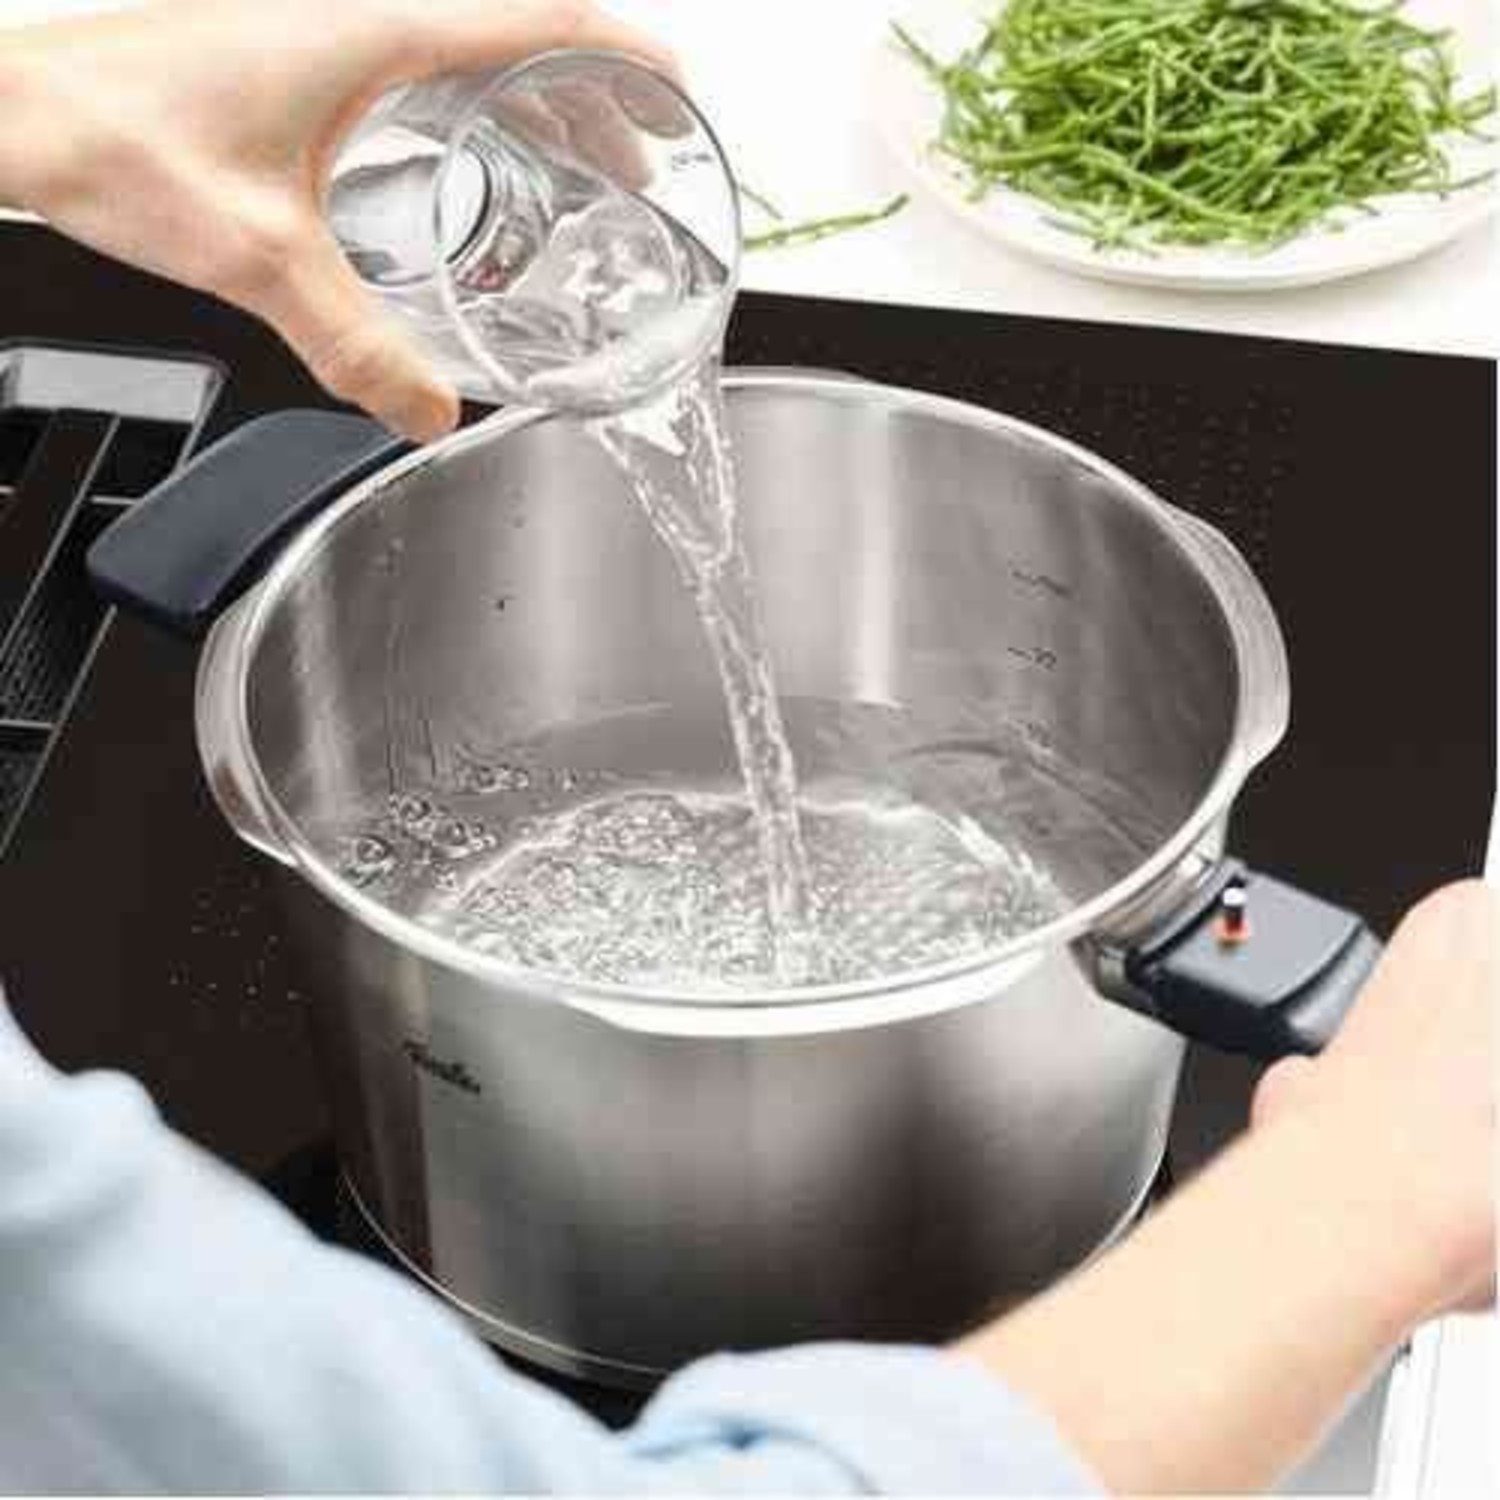 Vitaquick® Premium pressure cooker